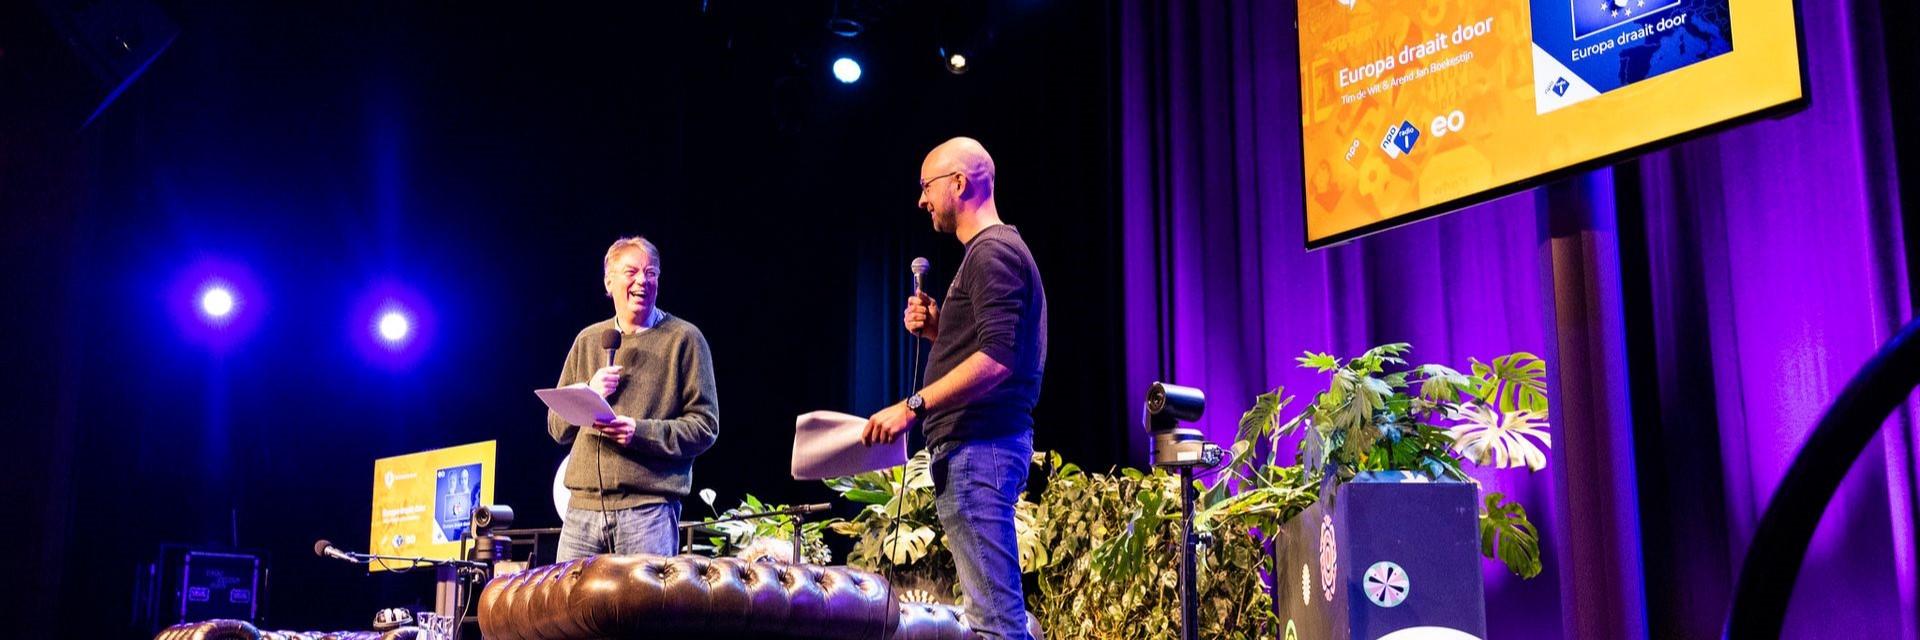 podcast, Tim de Wit, Arend Jan Boekestijn, schouwburg concertzaal, Europa